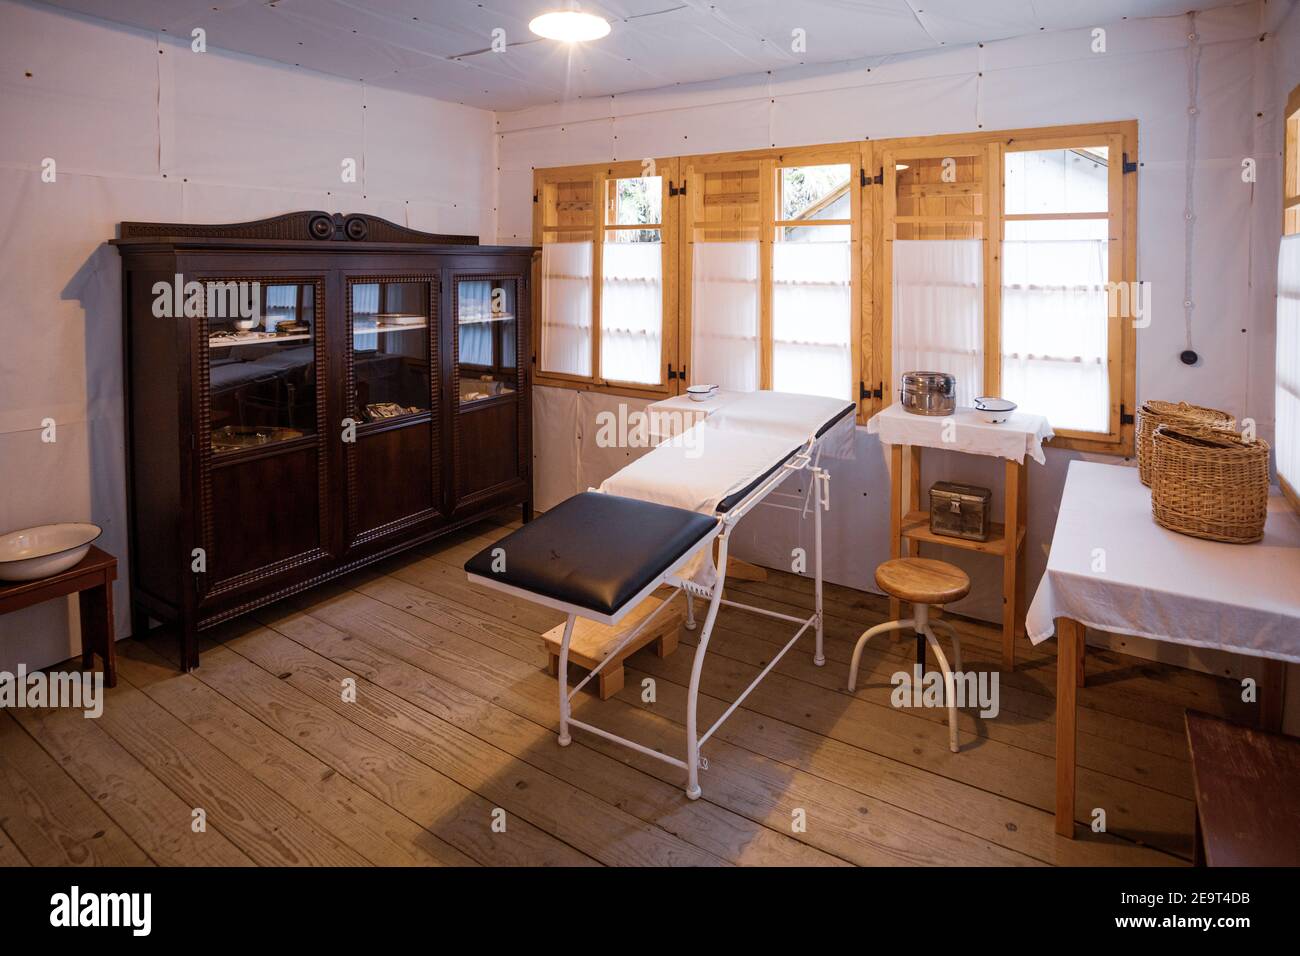 Eine alte Arztpraxis mit einem Arzttisch, Schrank, Stuhl und anderen  medizinischen Hilfsgütern Stockfotografie - Alamy